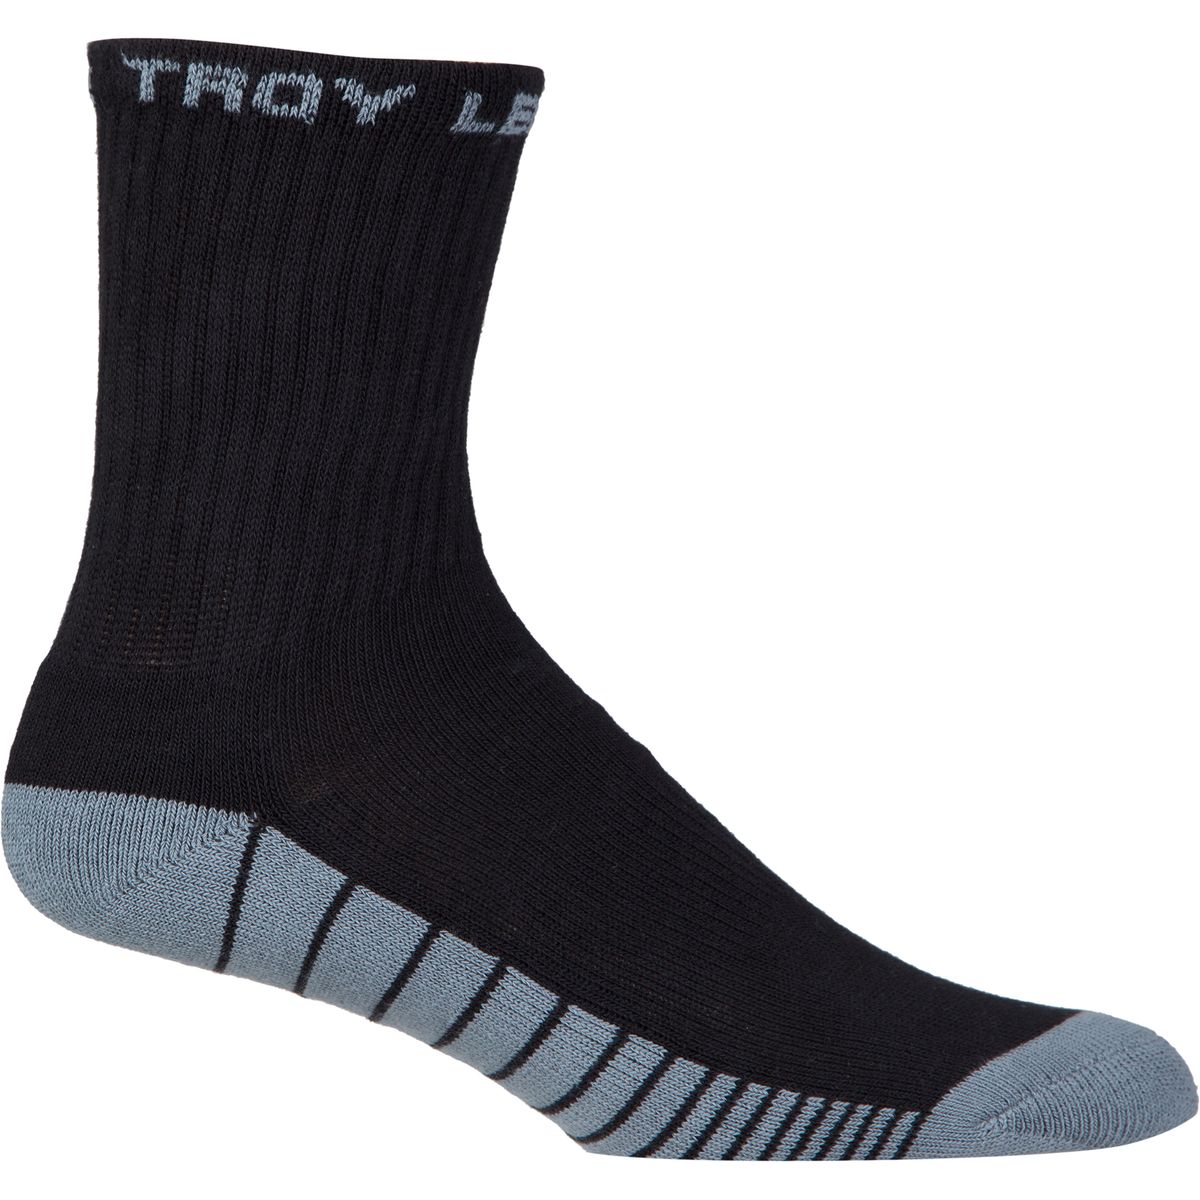 Troy Lee Designs Factory Crew Socks 3 Pack Men's